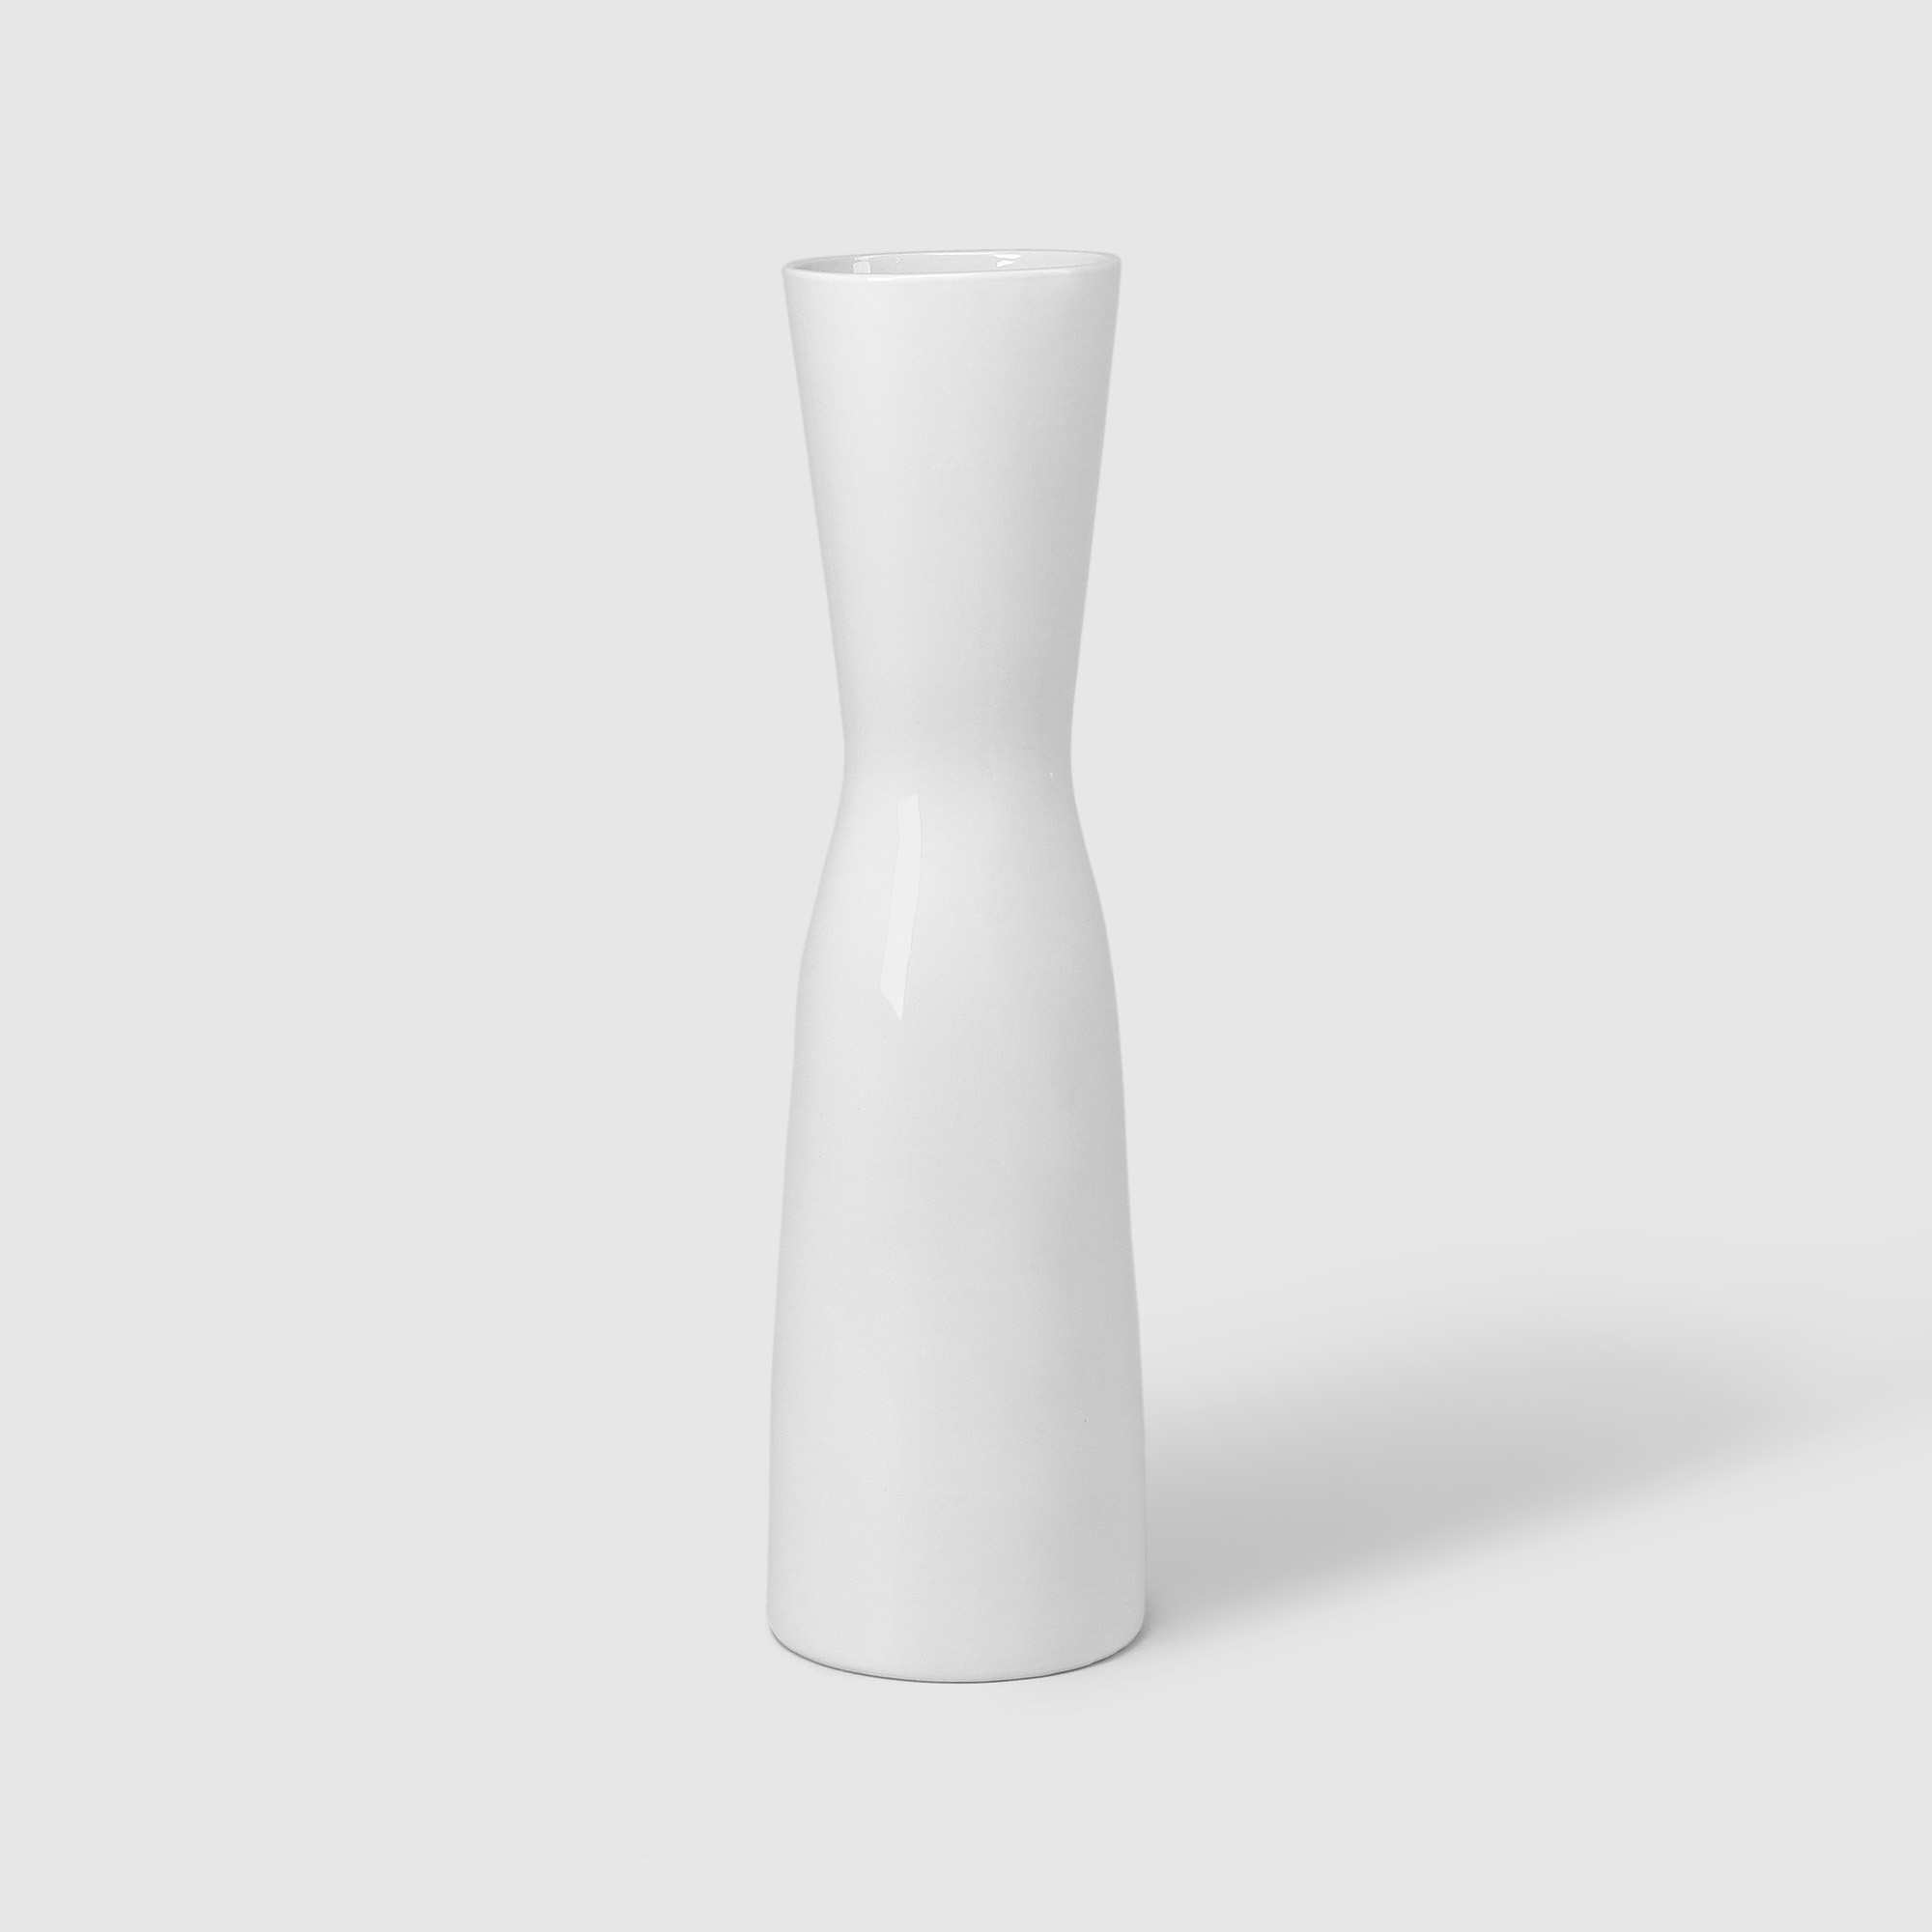 Ваза Porc-сeramic керамическая Алиса 20х40 см в ассортименте ваза 9х20 см в ассортименте